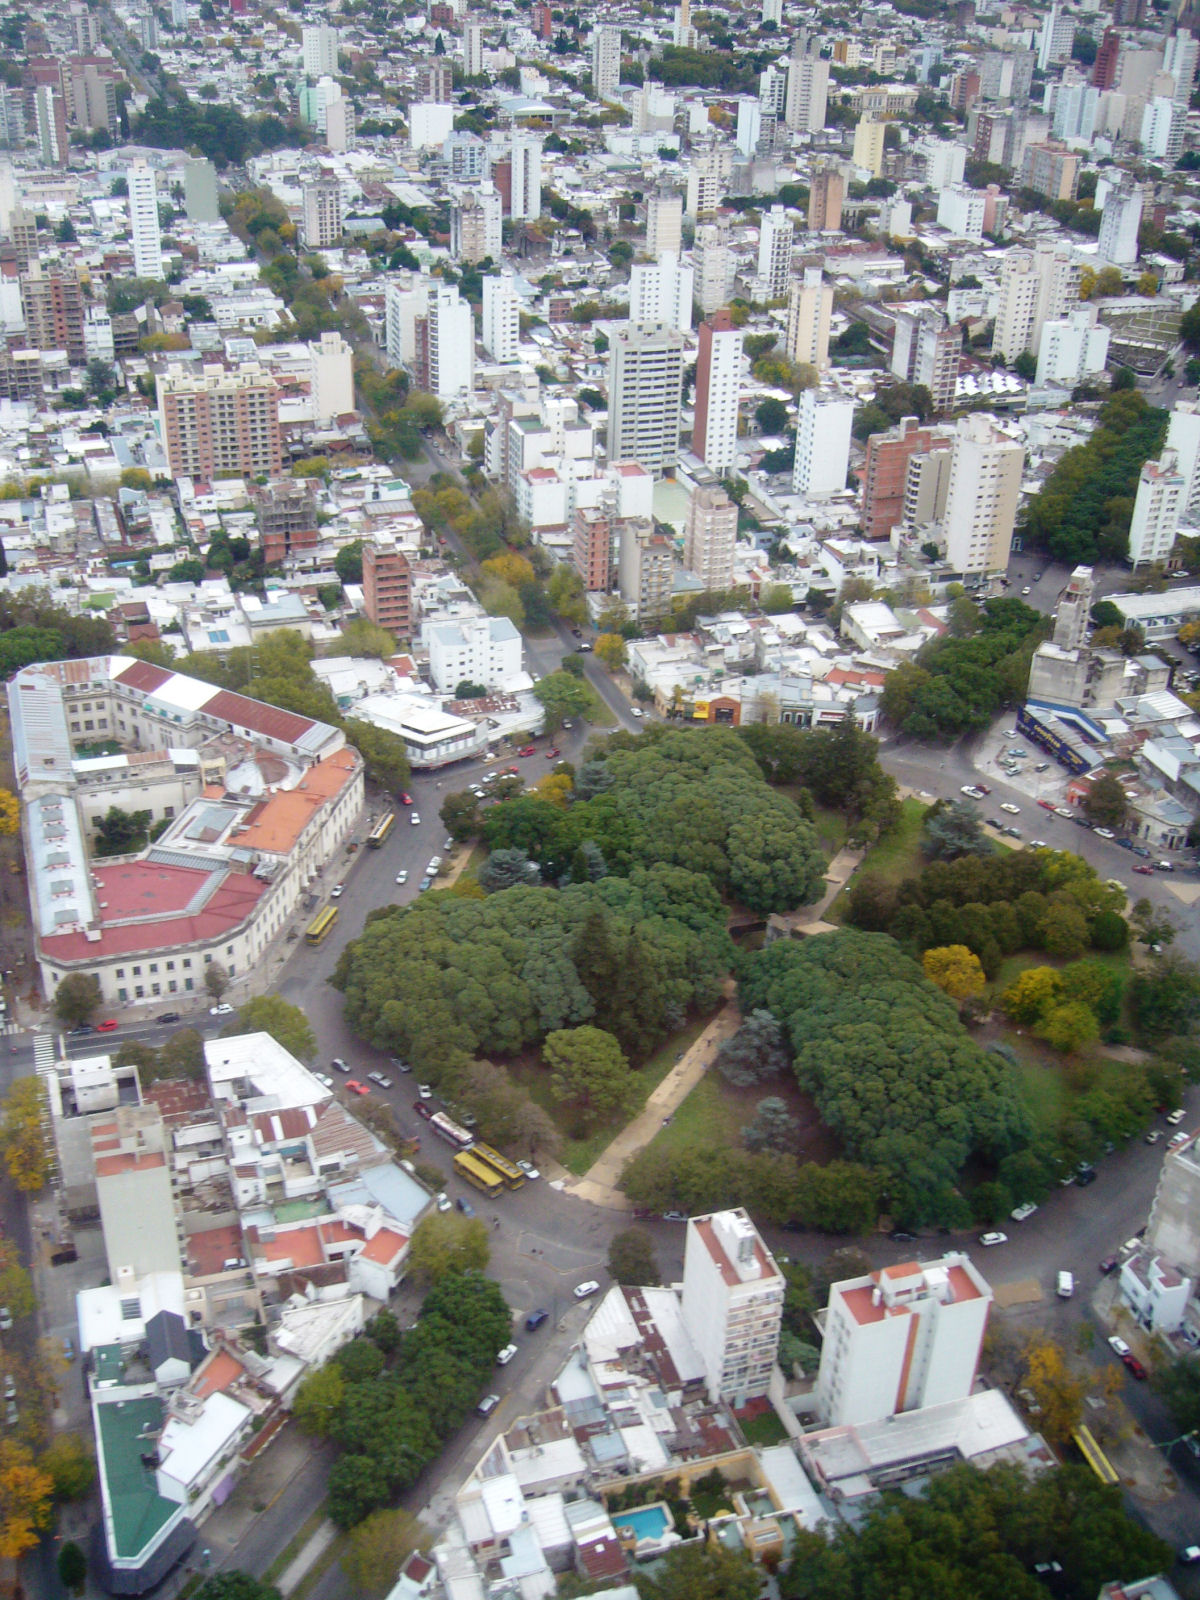 La Plata  provavelmente uma das mais belas cidades planejadas do mundo